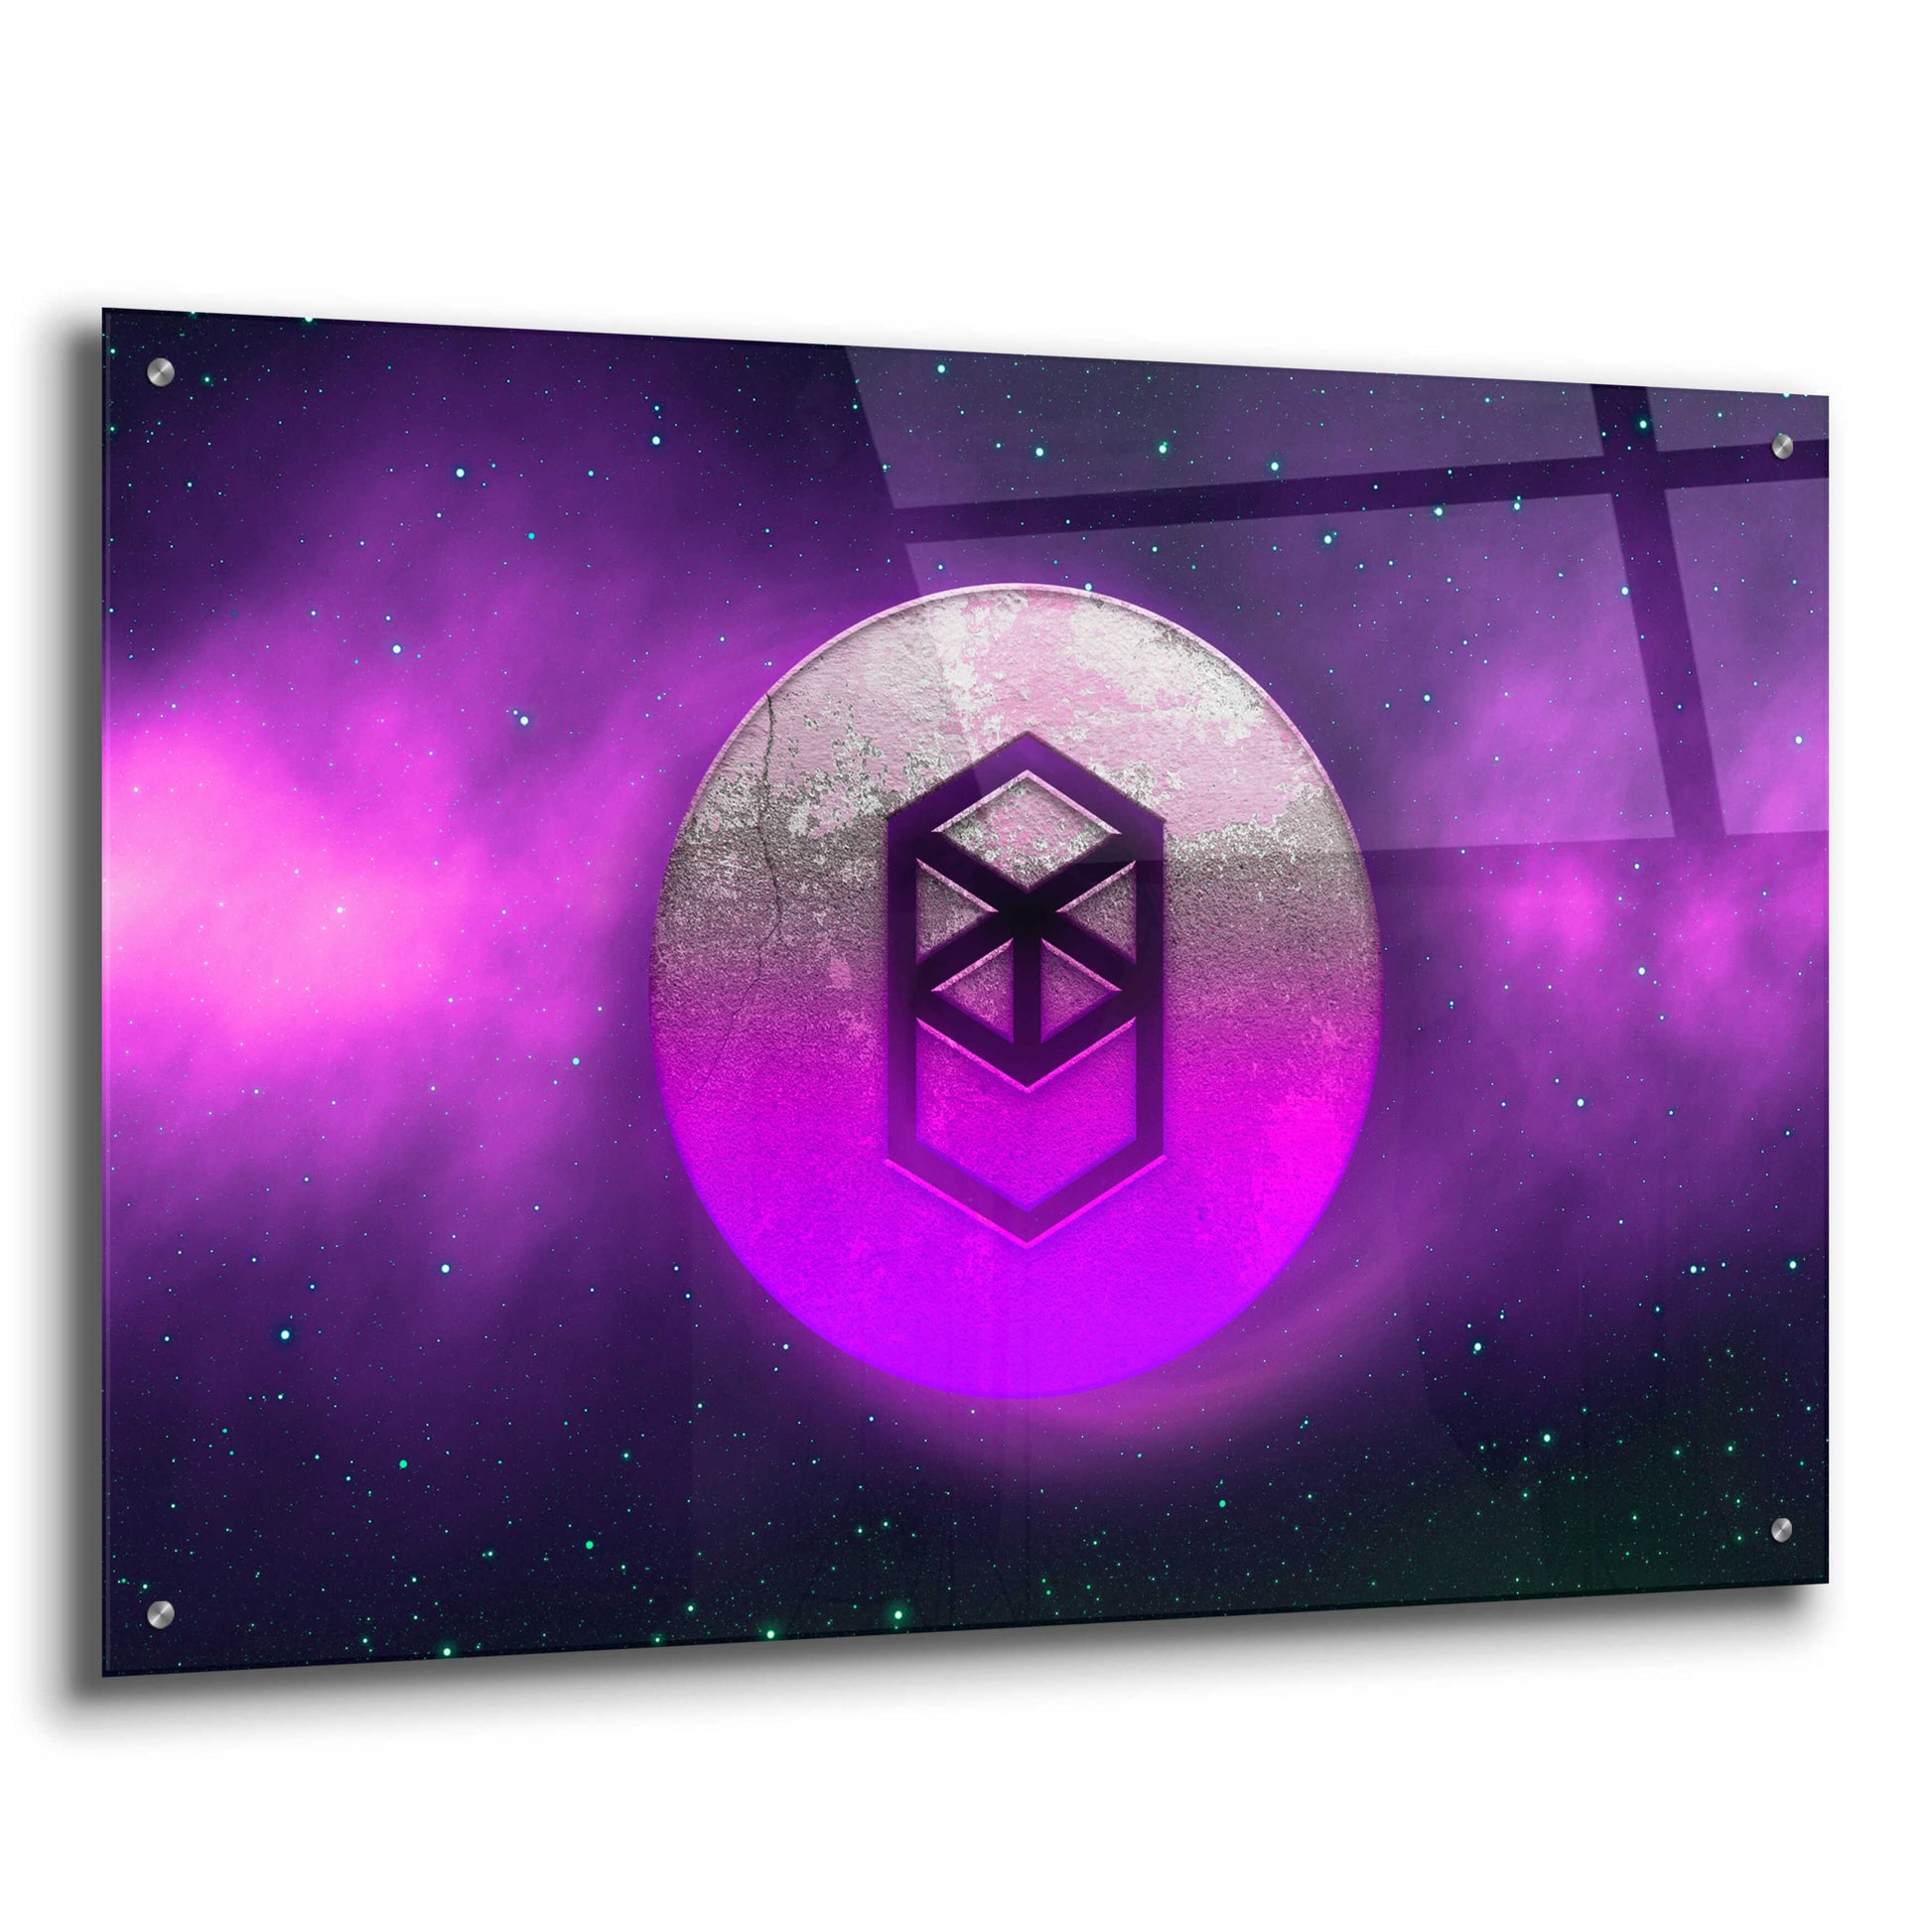 Epic Art 'Cosmic Crypto Fantom' by Epic Portfolio, Acrylic Glass Wall Art,36x24